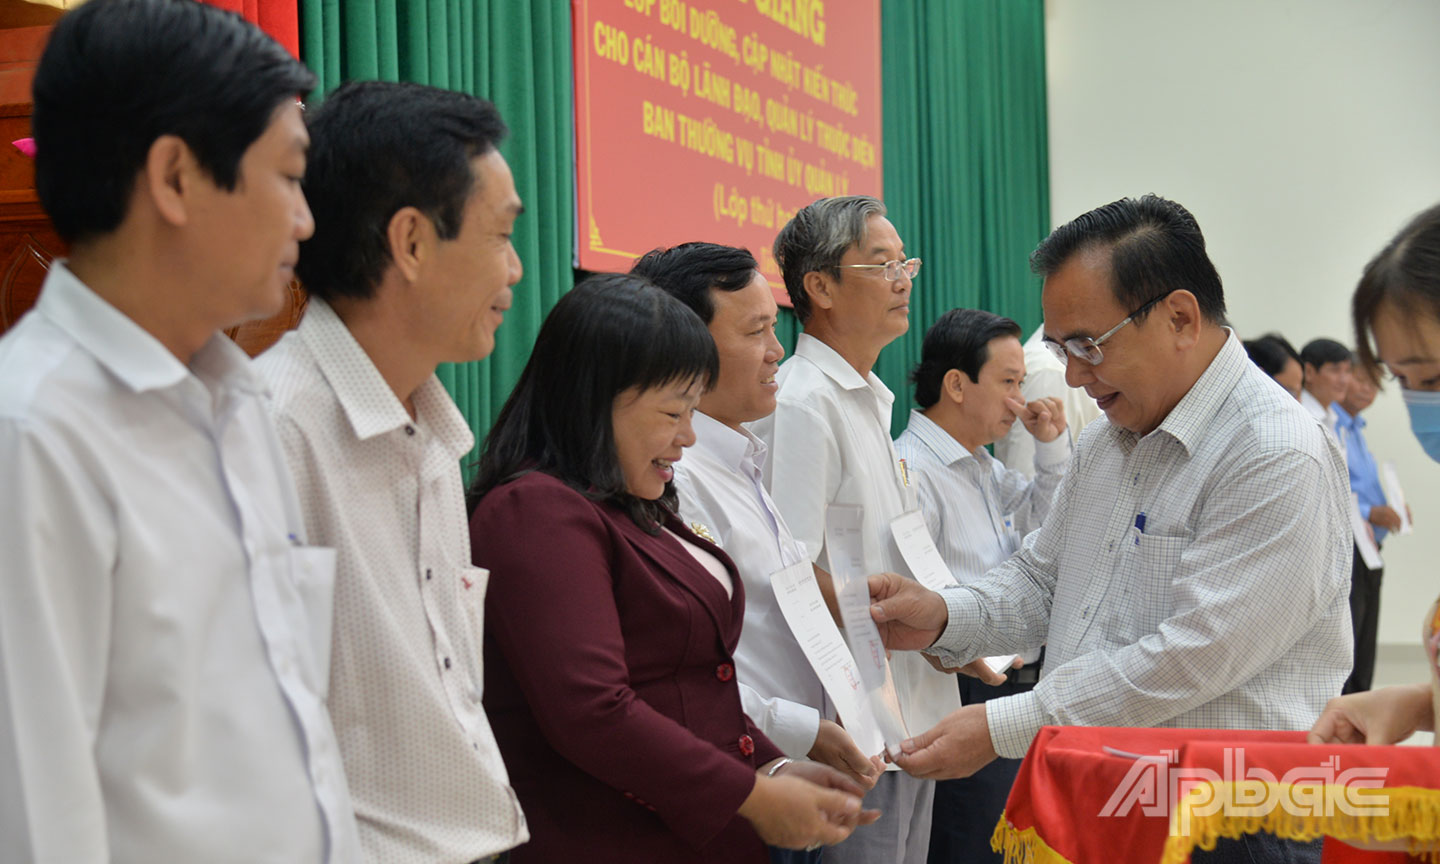 Đồng chí Võ Văn Bình trao Giấy chứng nhận cho các đồng chí tham gia lớp bồi dưỡng.